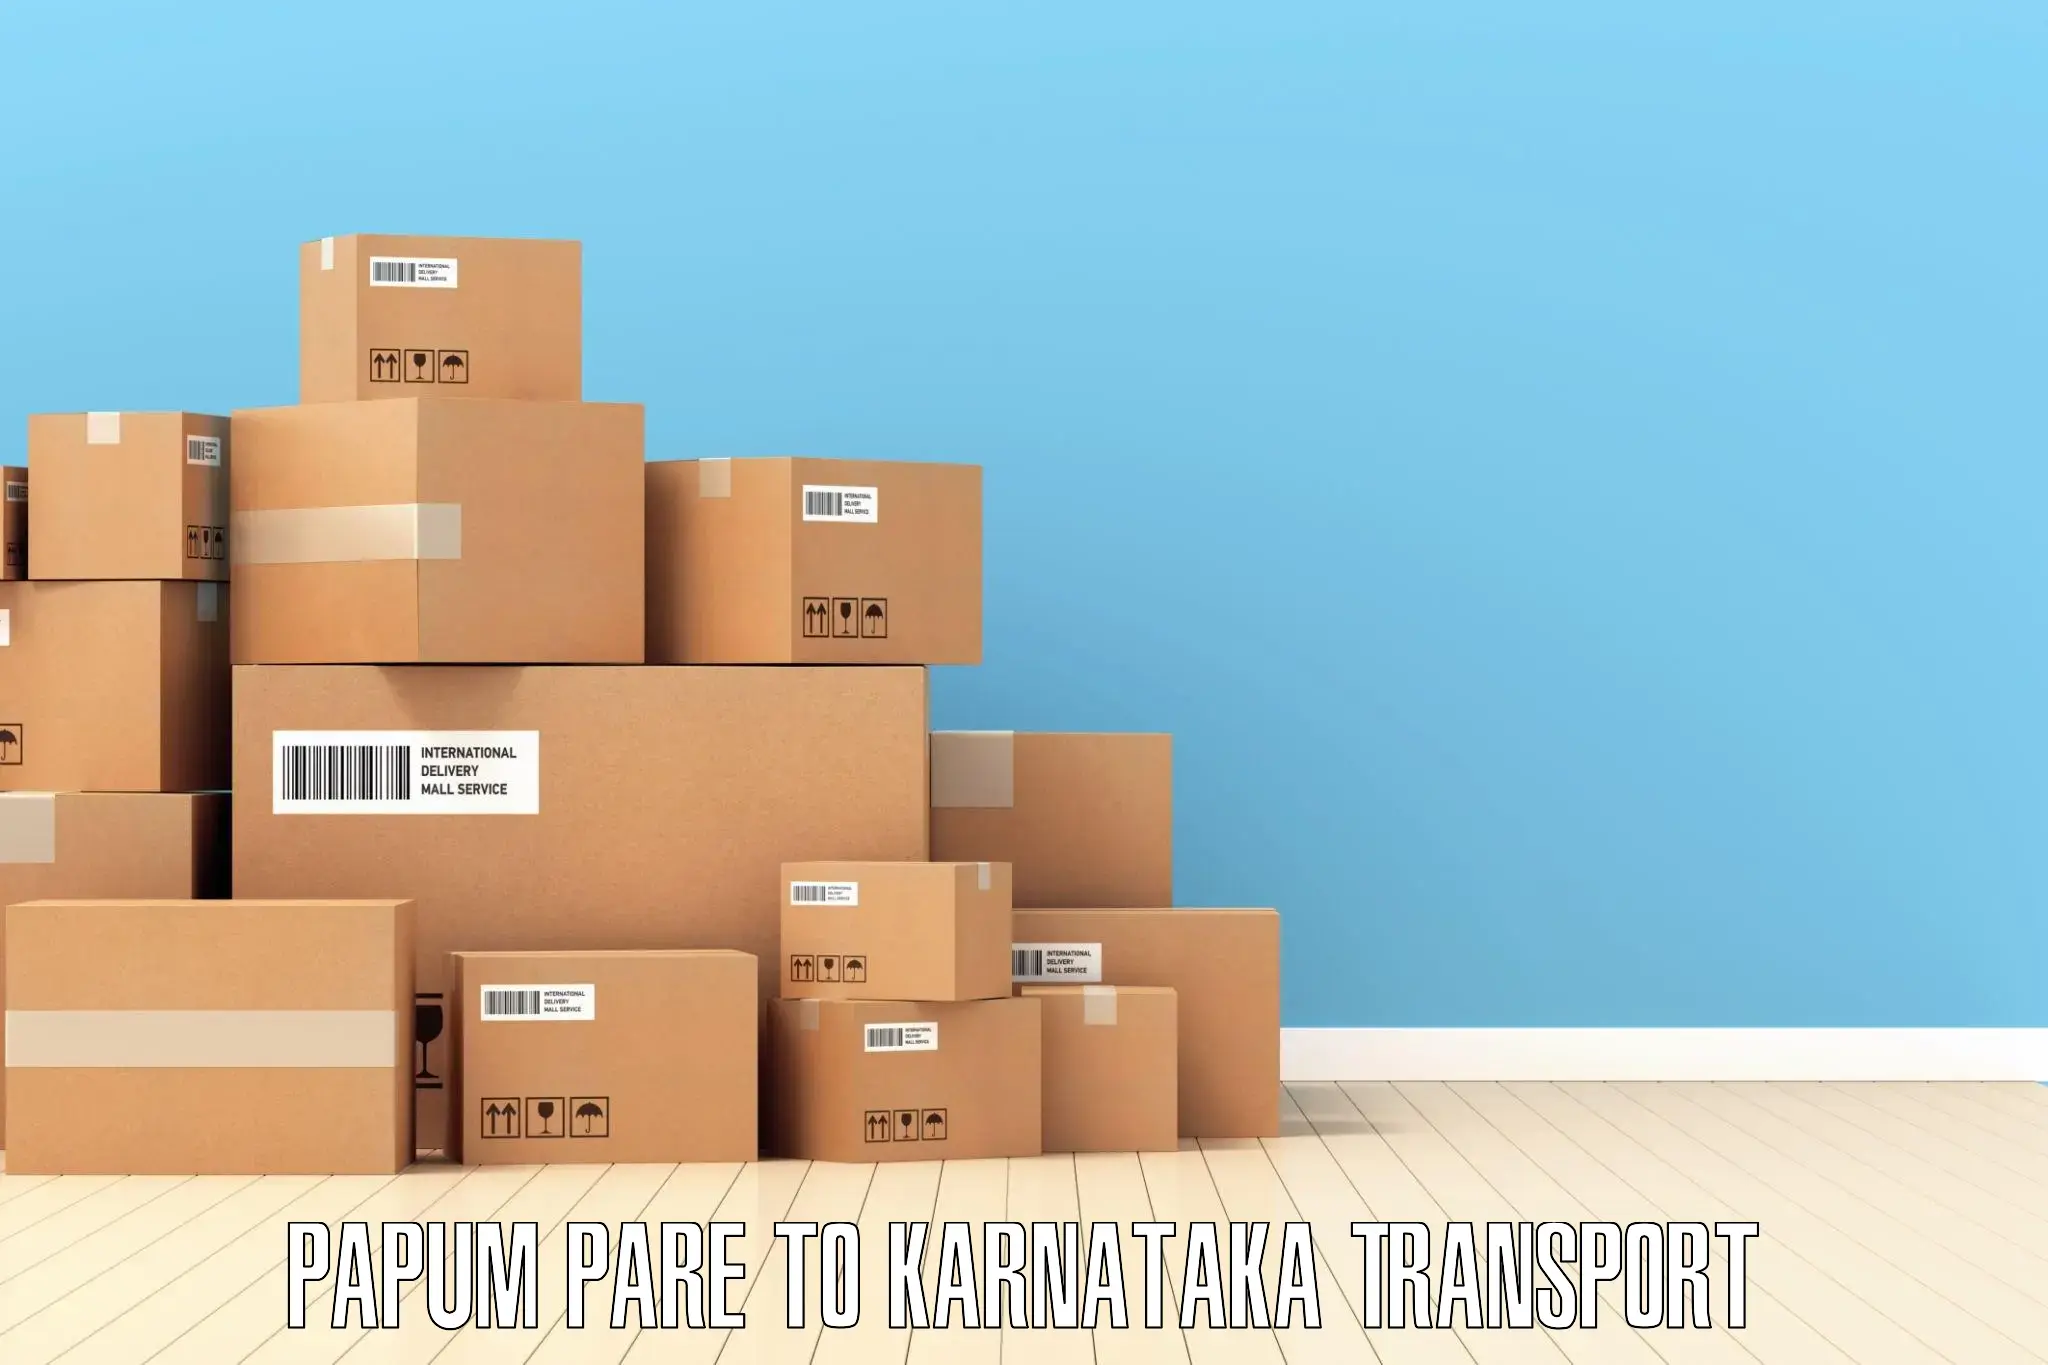 Nearby transport service Papum Pare to Kundapura